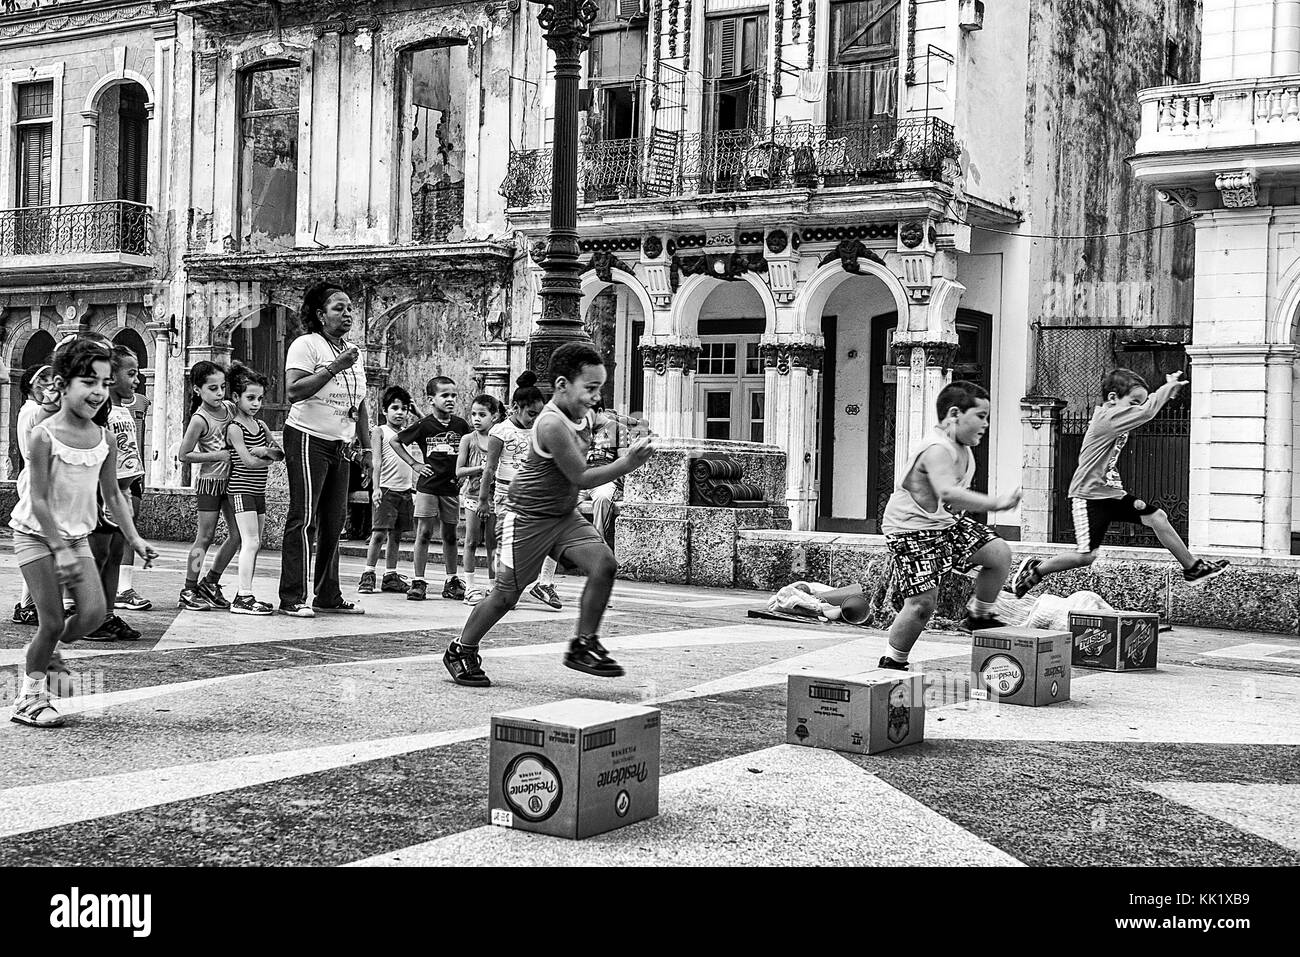 Una lezione di ginnastica all'aperto nel centro del paseo de marti (marti road), Havana, Cuba Foto Stock